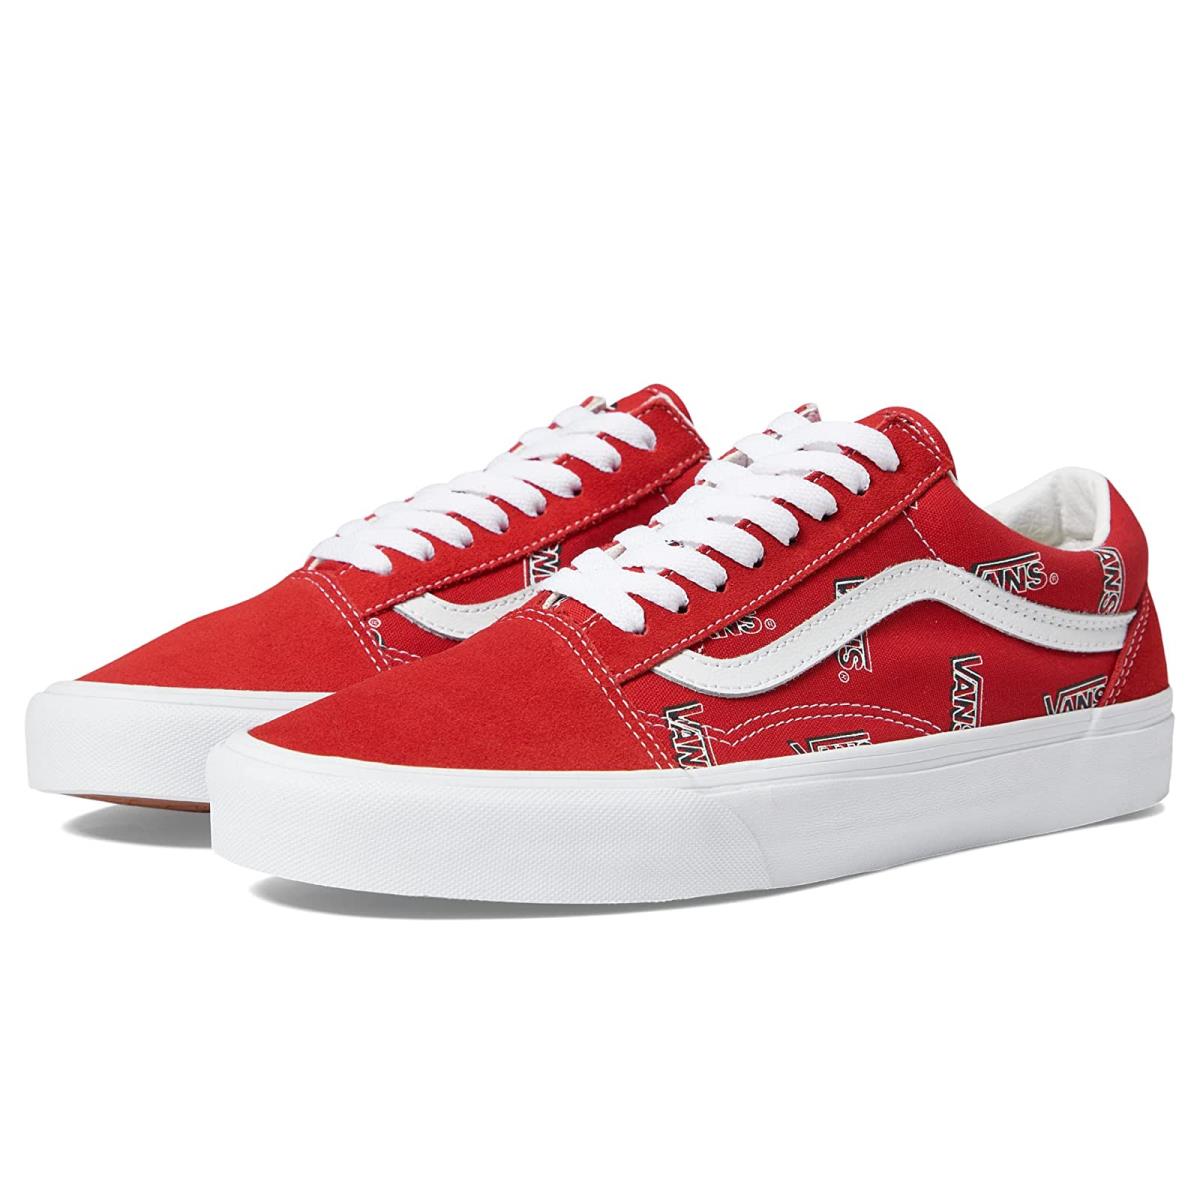 Unisex Sneakers Athletic Shoes Vans Old Skool Vans Misprint Red/White